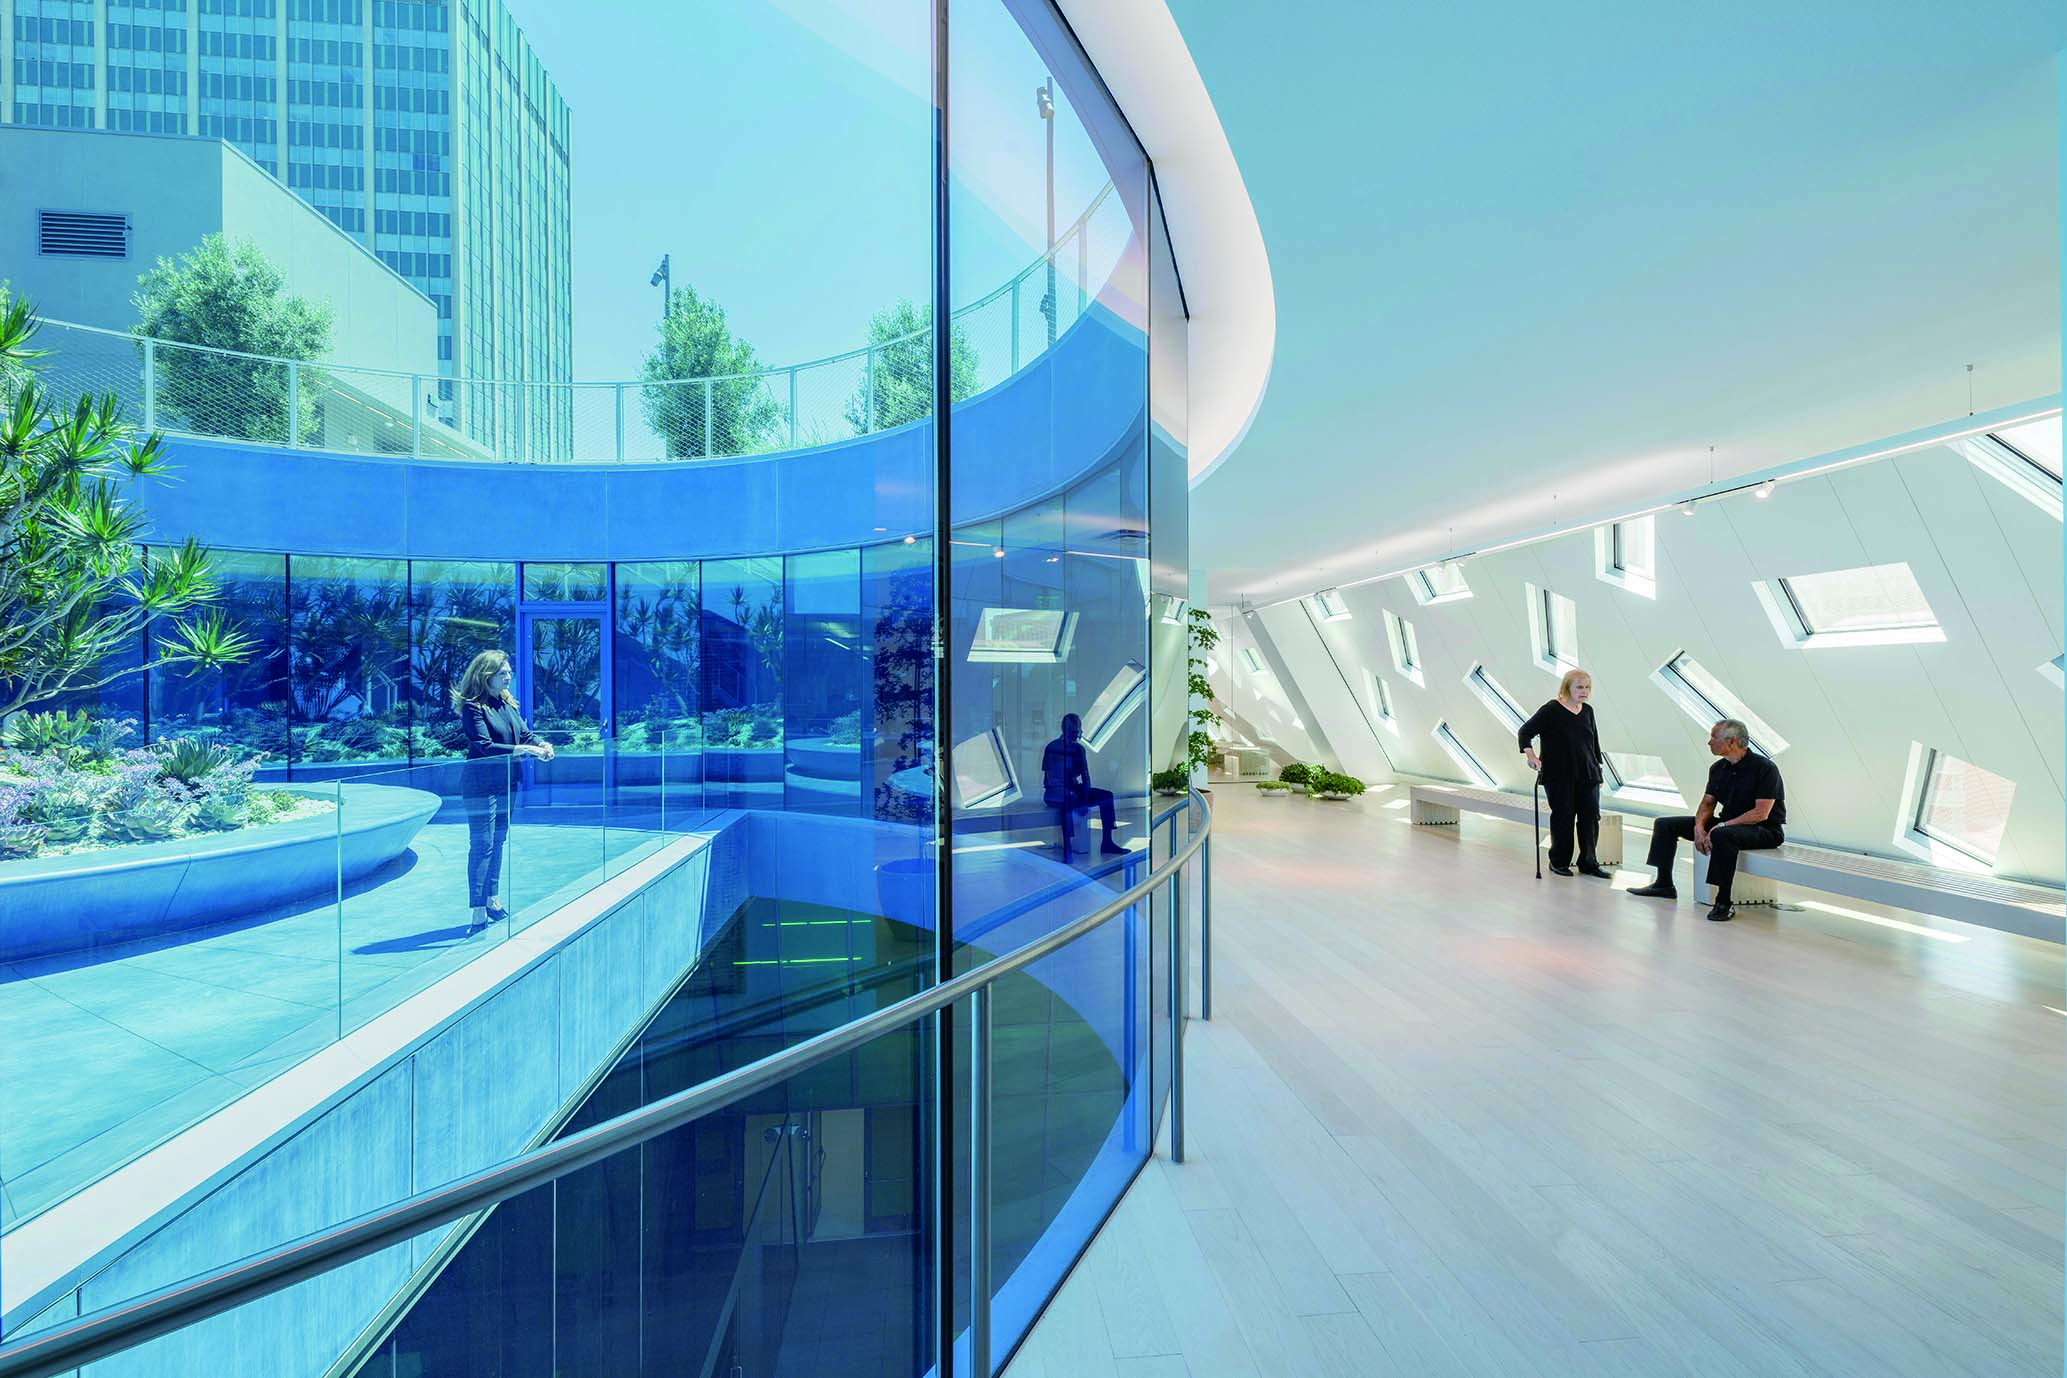 连通屋顶的圆形花园，以蓝色玻璃墙幕沟通室内外空间。